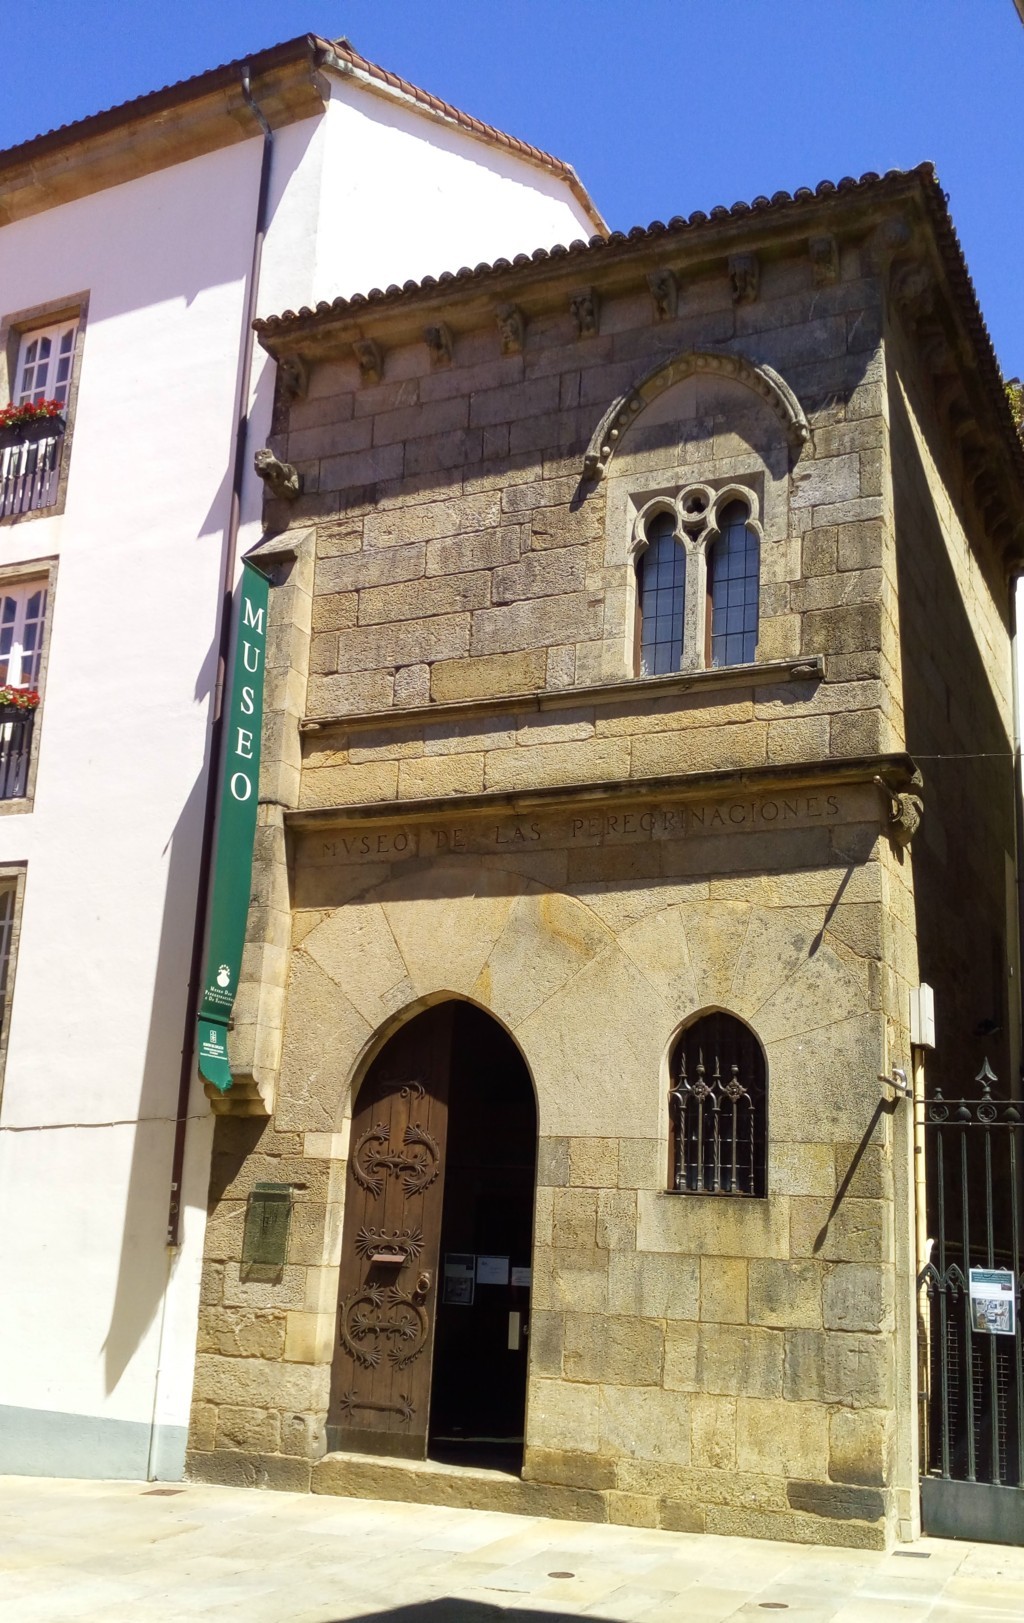 Foto 2 - En la rúa y a la derecha casa Gótica (S. XIV) Tambien conocida como "A Casa do Rei Don Pedro"